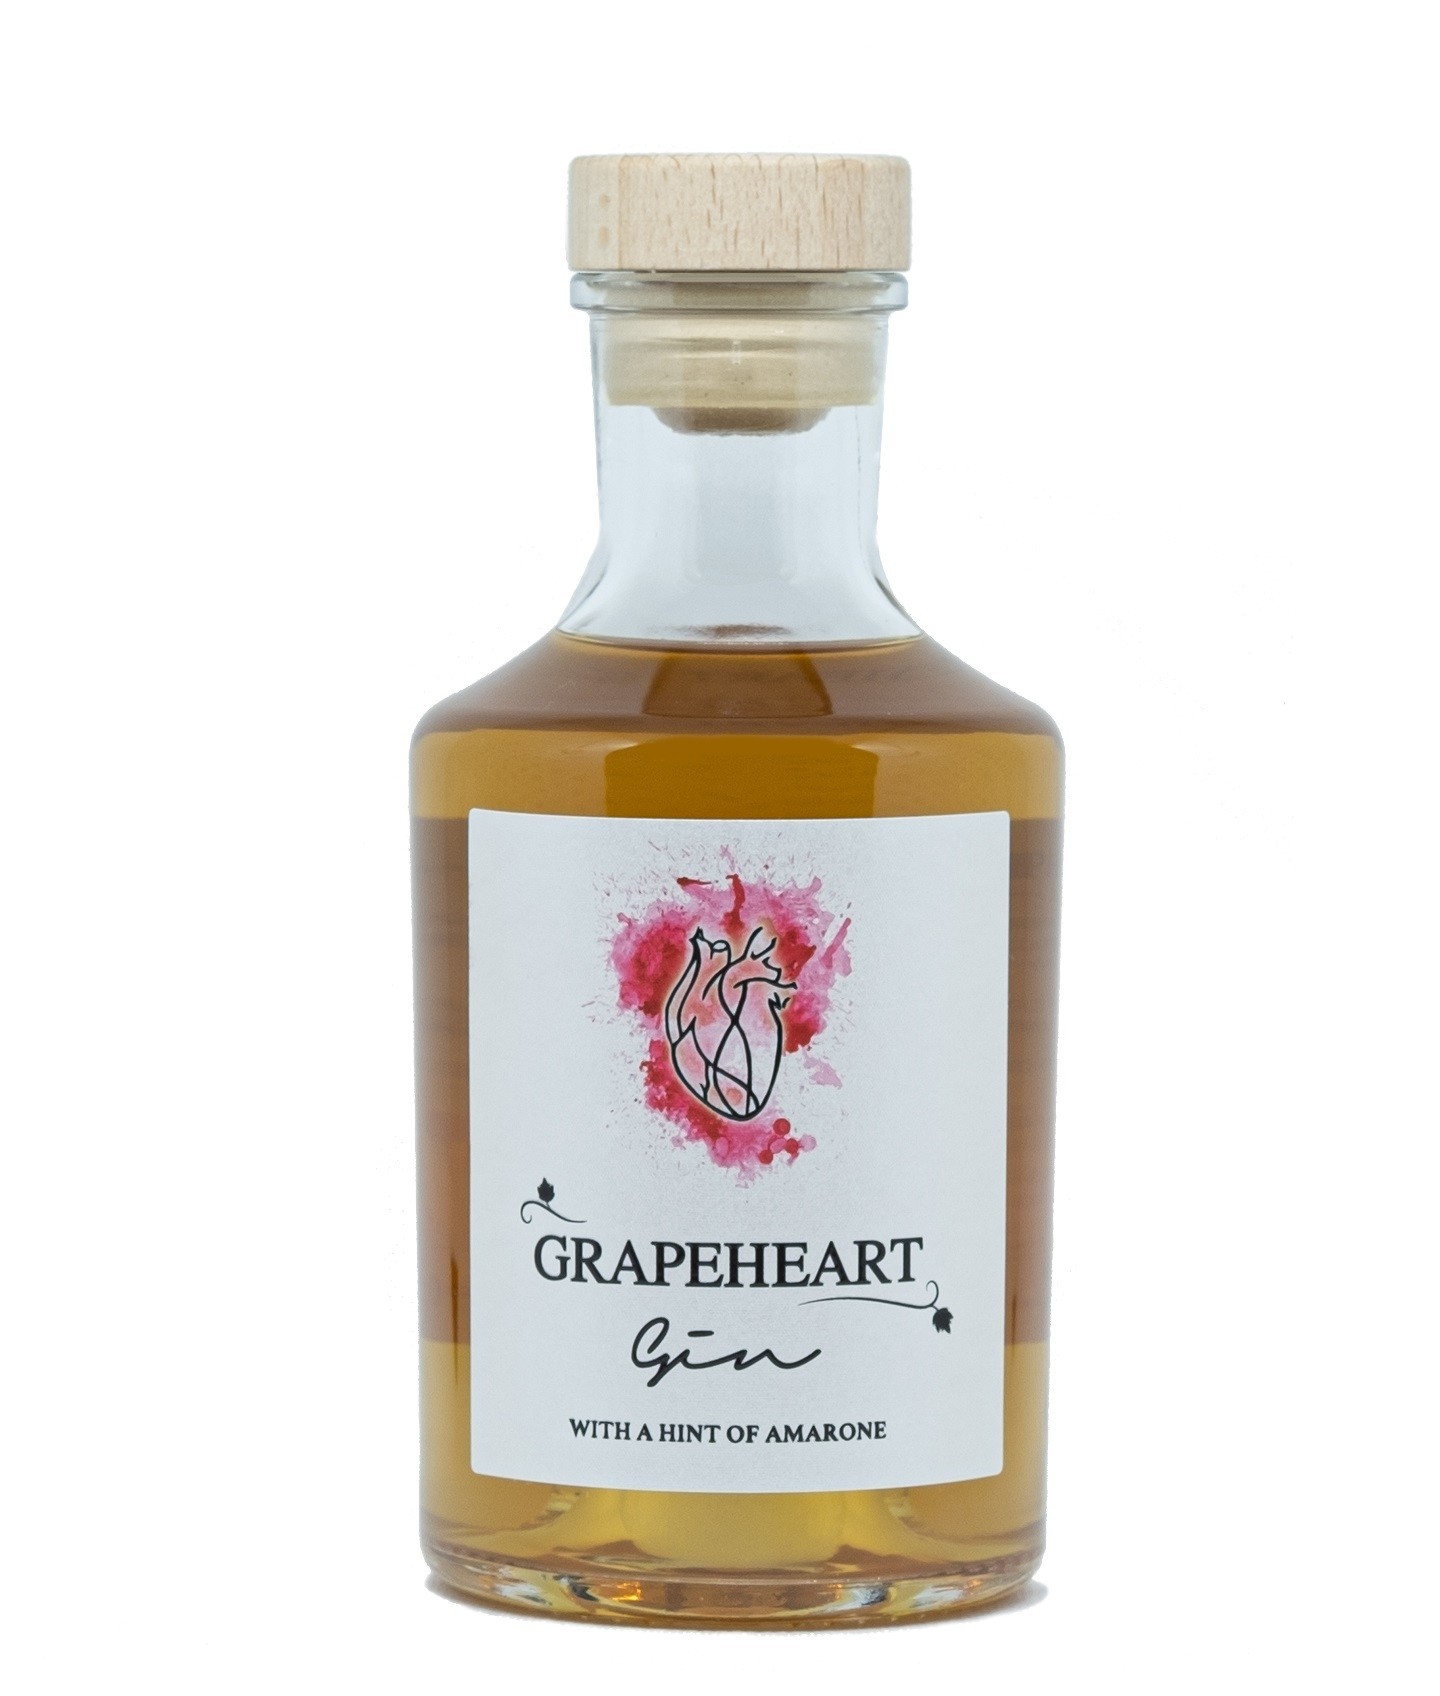 ENJOY VALPOLICELLA - Compound Grapeheart Gin - Gin Artigianale al profumo di Amarone